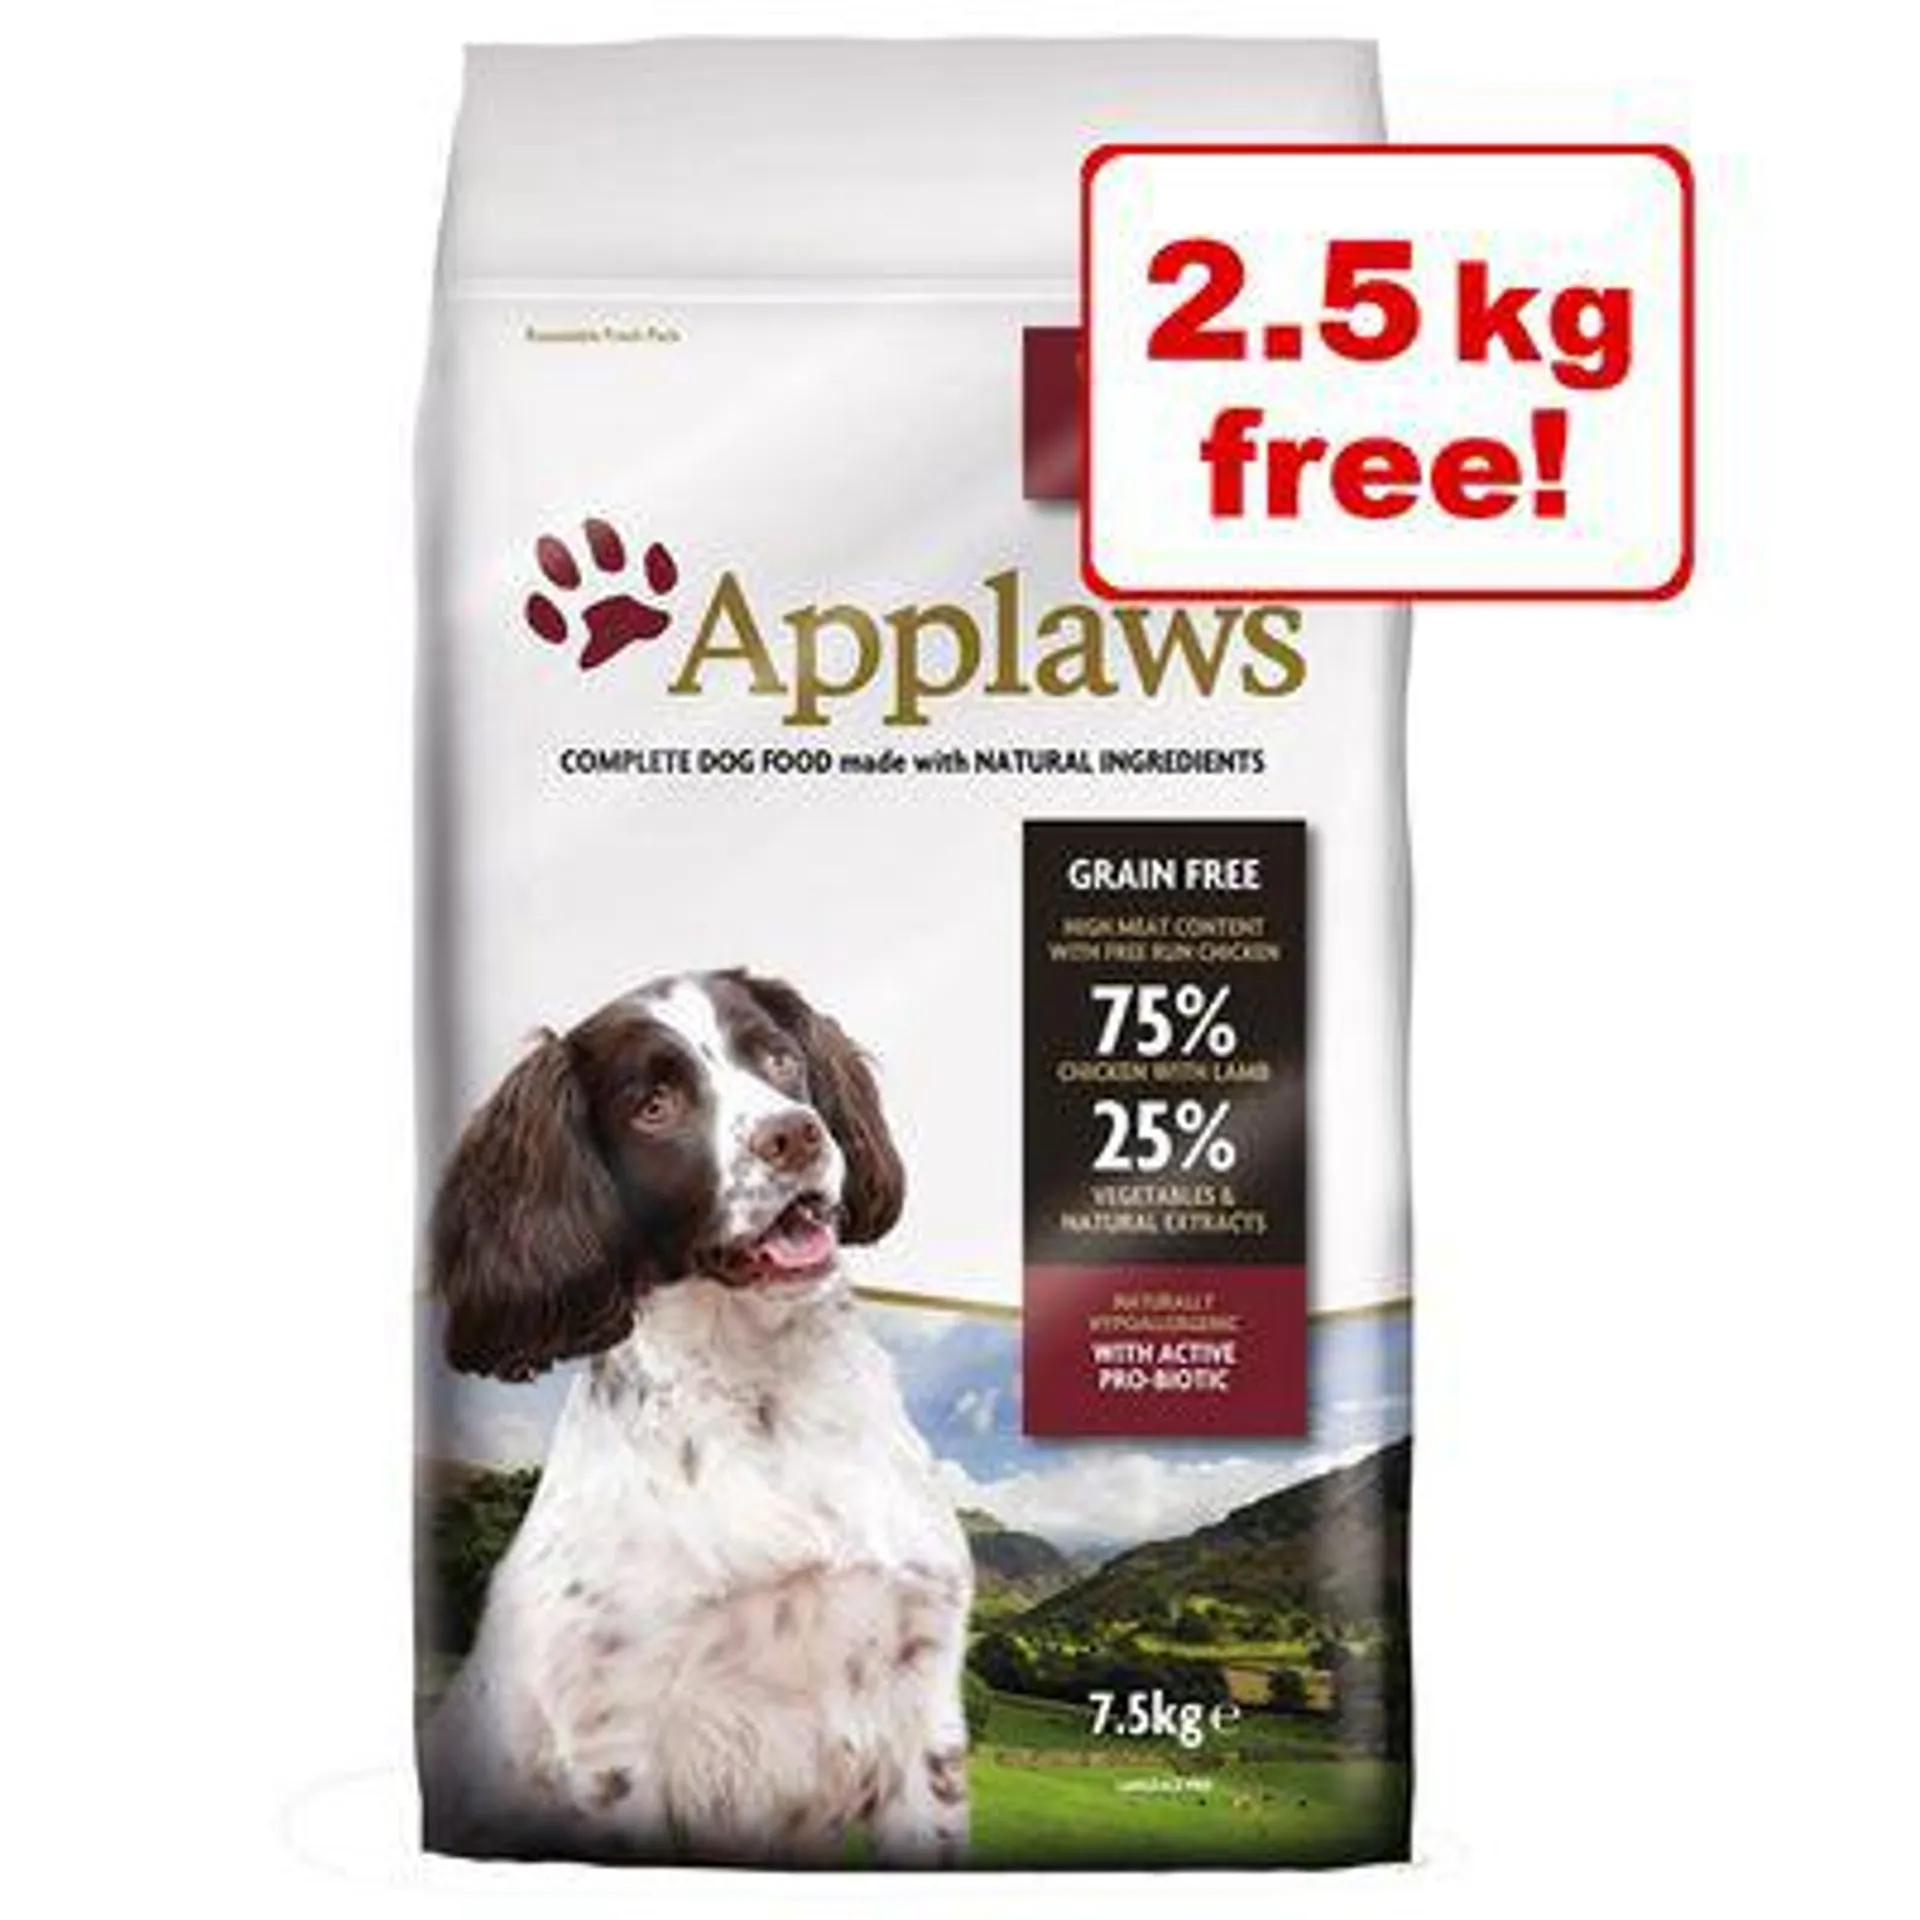 7.5kg Applaws Dry Dog Food - 5kg + 2.5kg Free!*